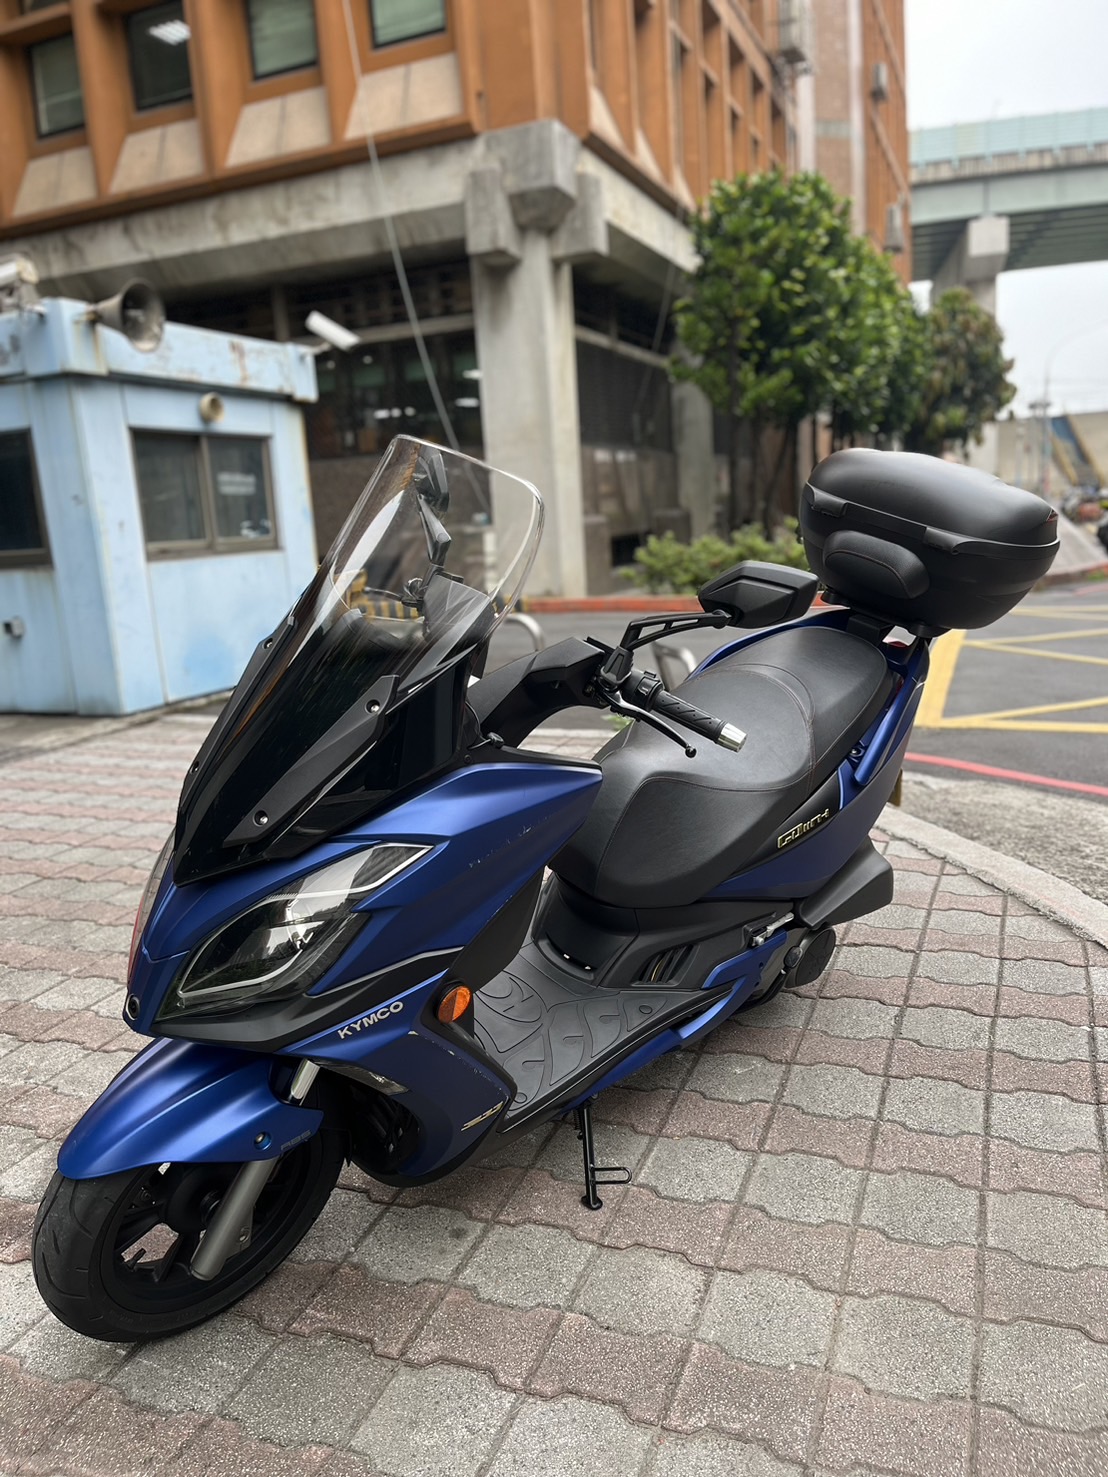 【小木炭想賣車】光陽 G-DINK 300 - 「Webike-摩托車市」 超低里程 黃牌路權代步車 2020 KYMCO G-DINK300